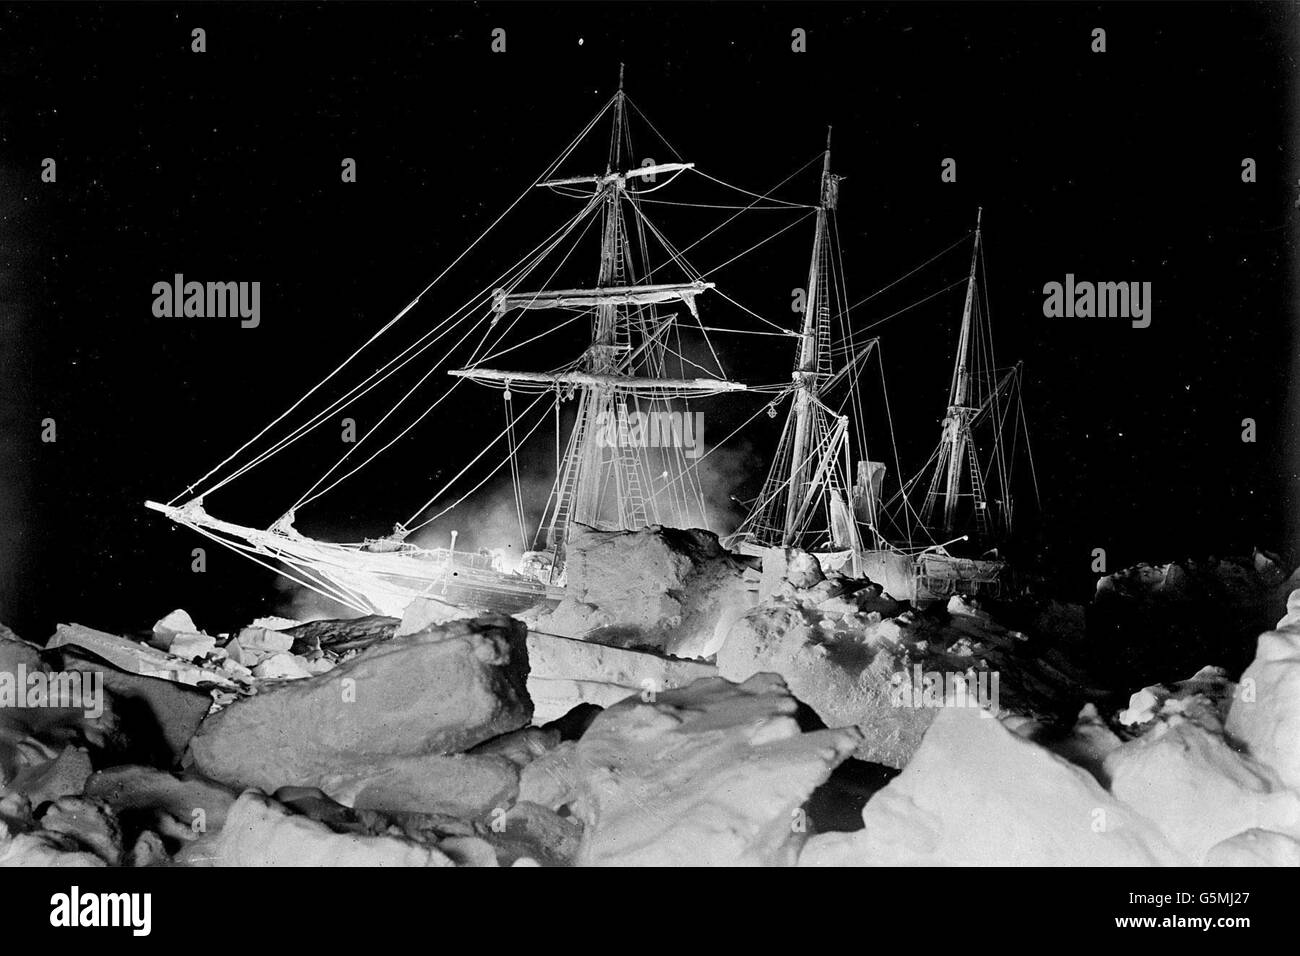 La nave di Sir Ernest Shackleton, la 'Endurance' nel Mare di Weddel, Antartide. Una fotografia invernale con una torcia che mostra gli enormi blocchi di ghiaccio che minacciavano di schiacciarla. La nave infine affondò il 27 ottobre 1915 dopo due mesi di pressione costante dalle galleggianti di ghiaccio. Foto Stock